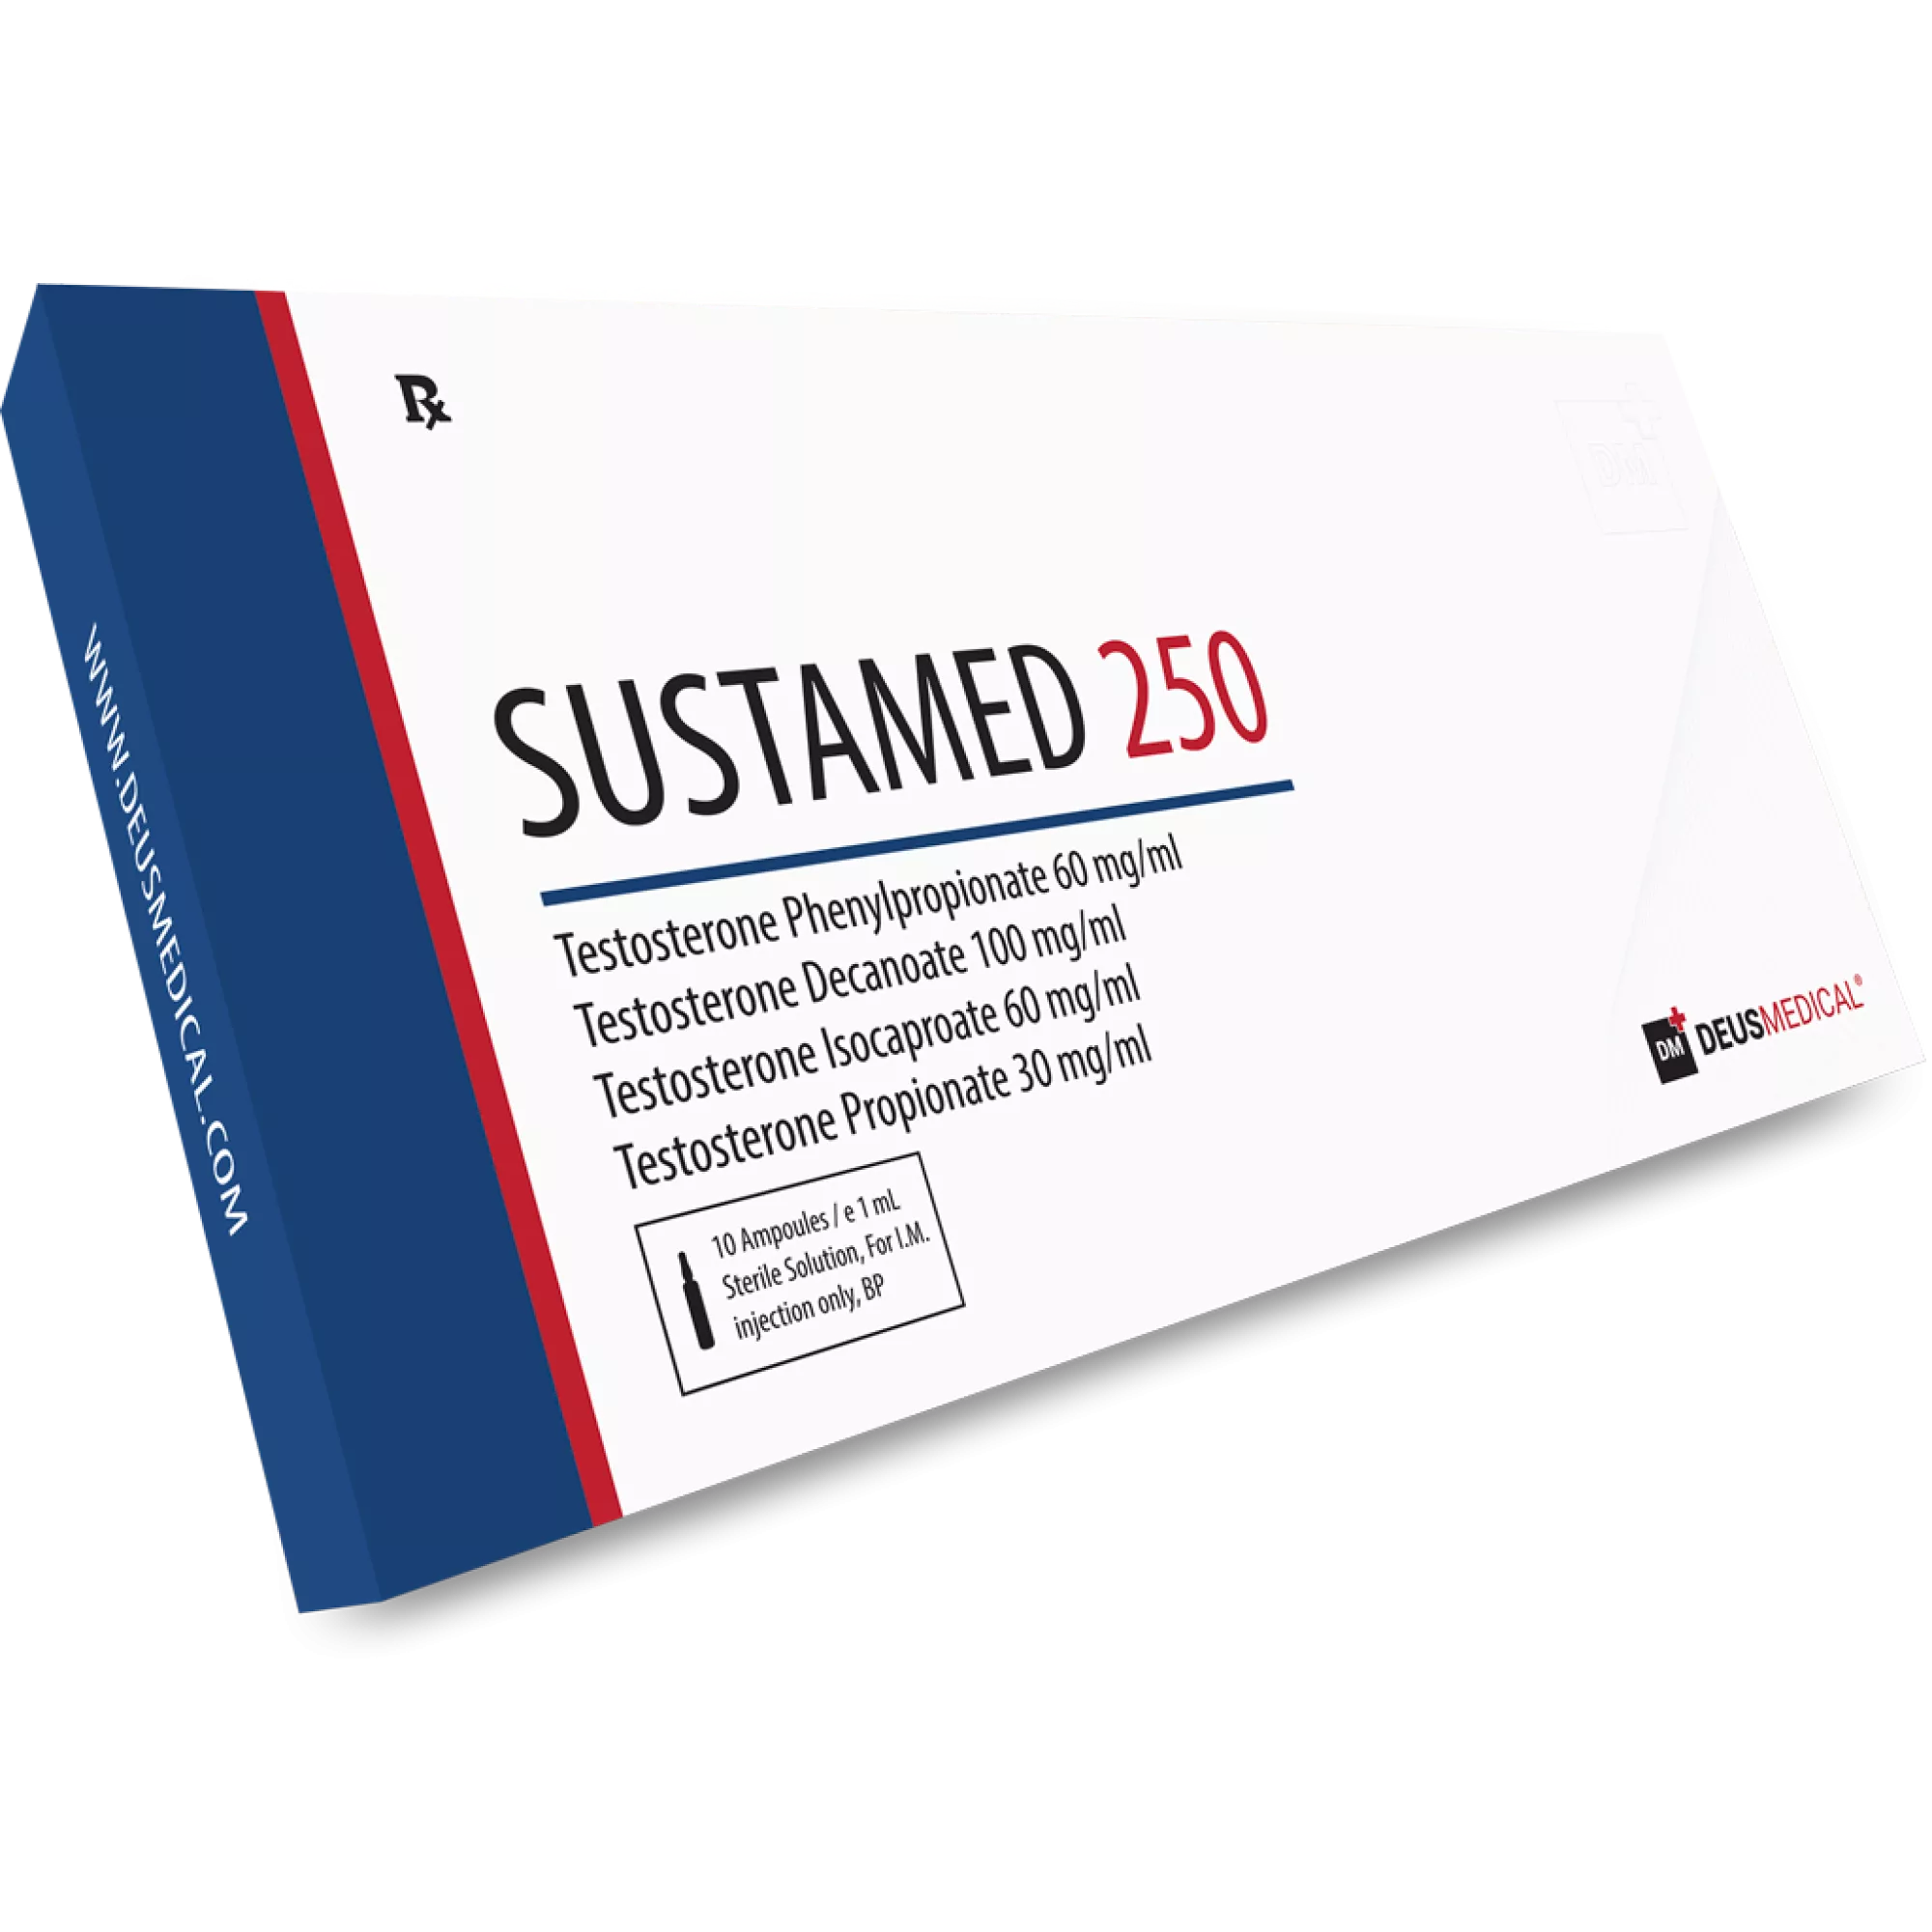 SUSTAMED 250 (Sustanon), Deus Medical, Buy Steroids Online - www.deuspower.shop